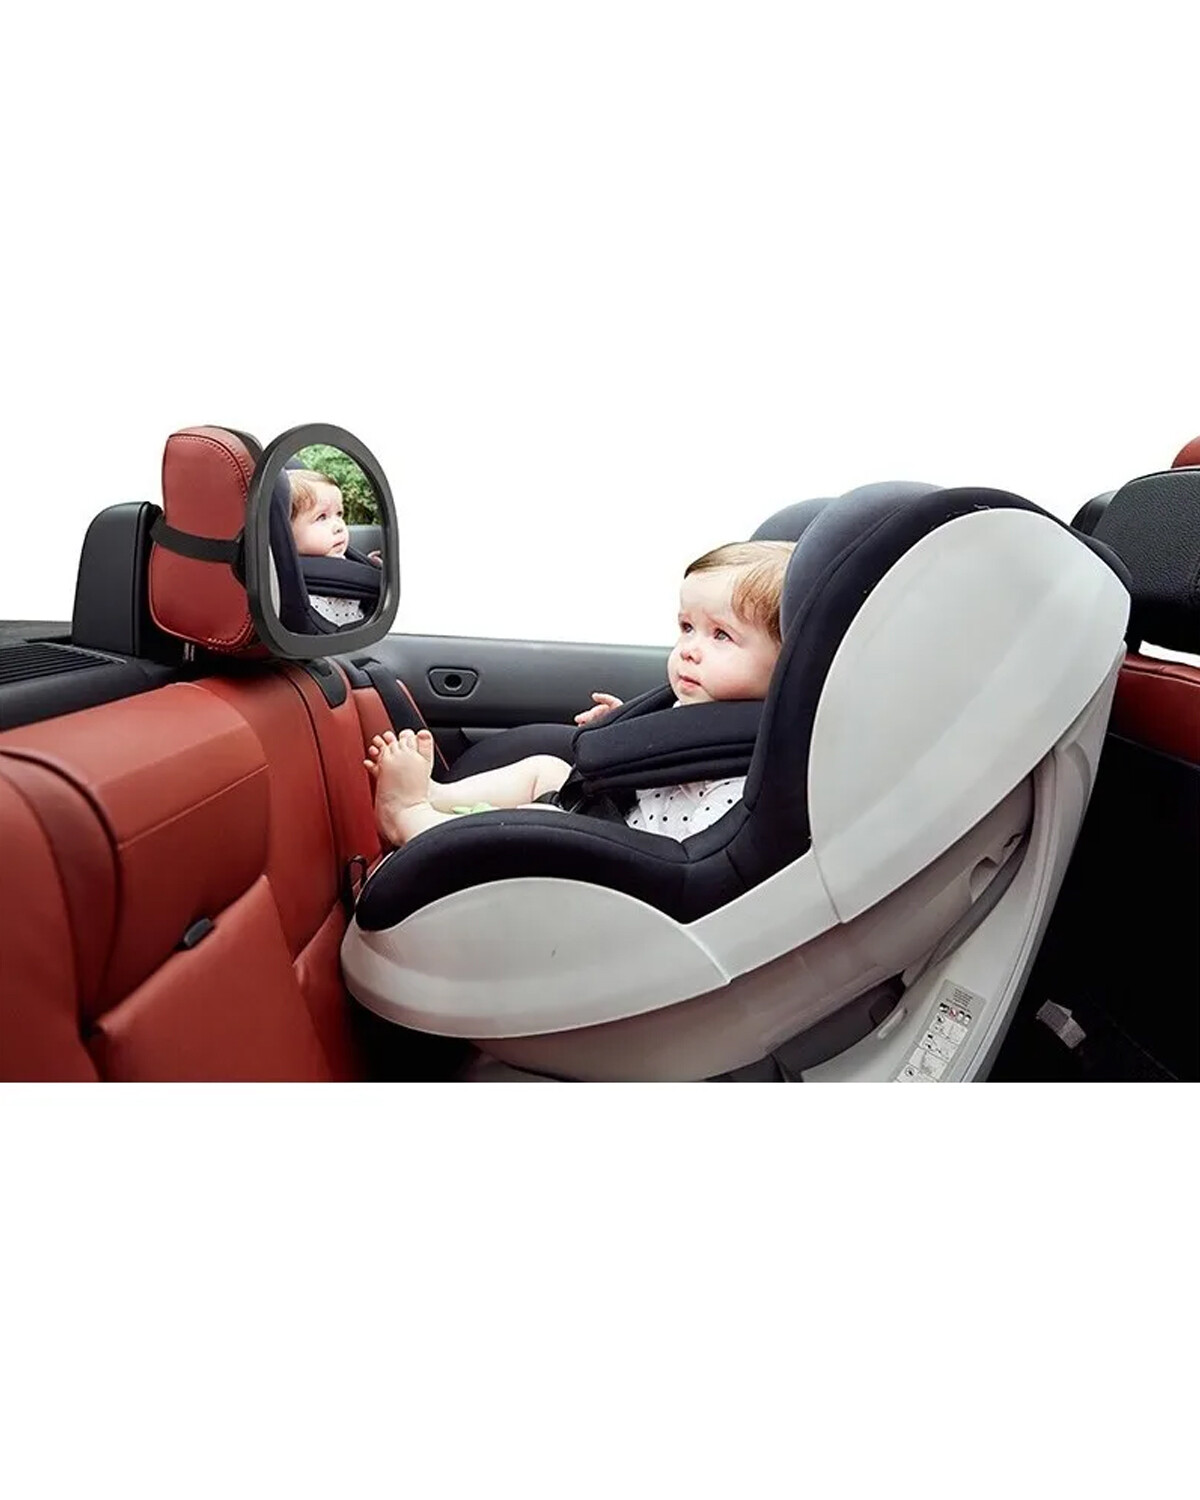 Espejo Retrovisor Para Bebe Auto Vehículo Carro Vigilancia Seguridad